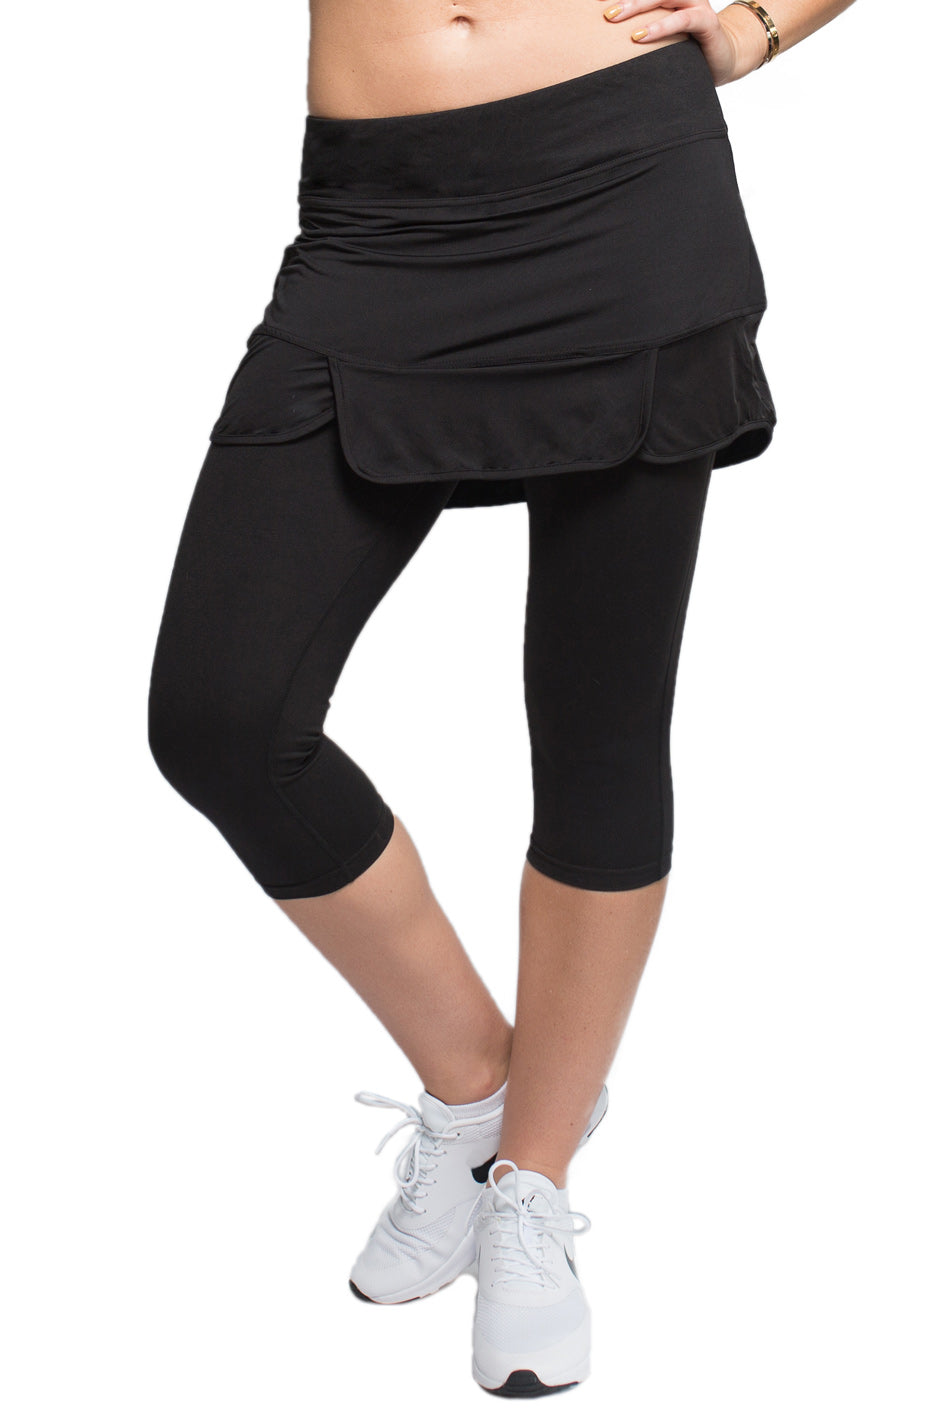 Female model in a black Endurance Skirted Capri Legging